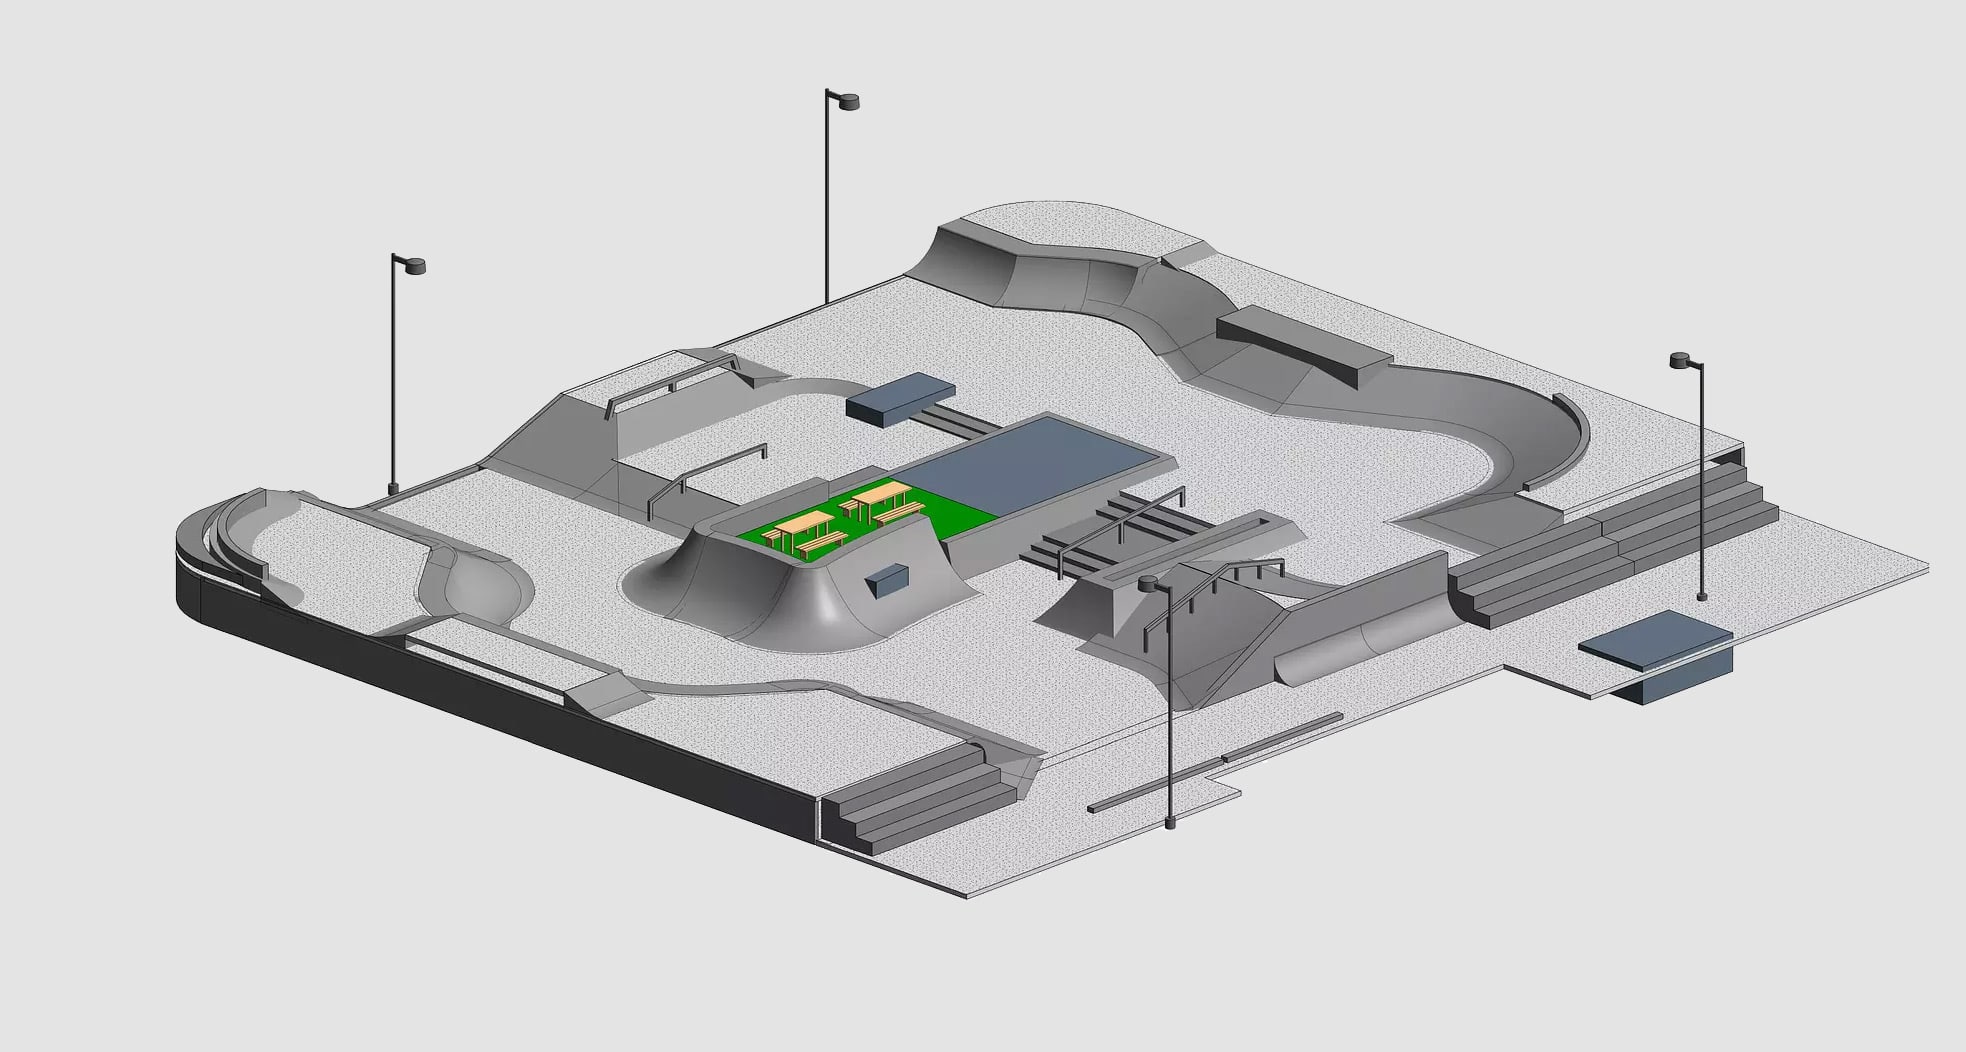 Gray mockup drawing of a skatepark